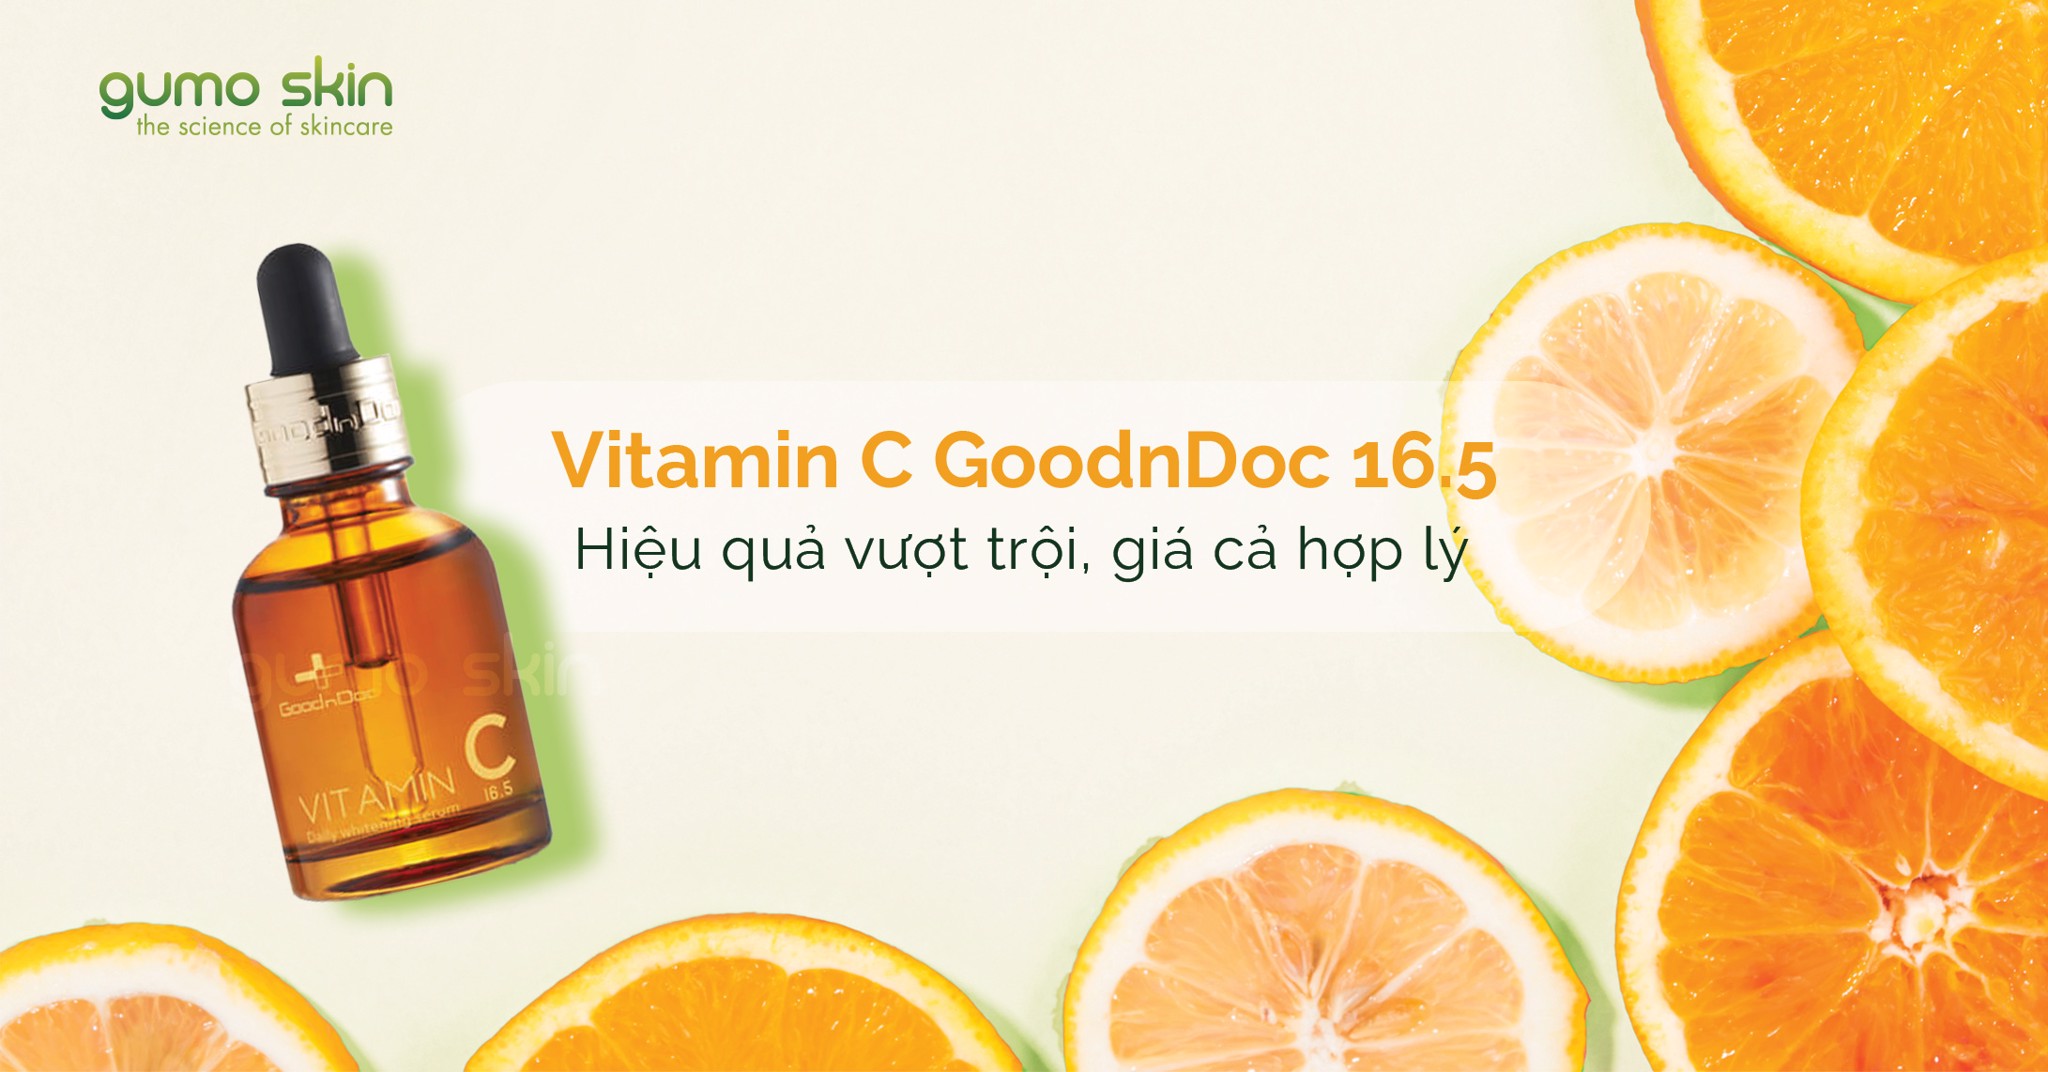 [Review] Vitamin C GoodnDoc 16.5 - Hiệu quả vượt trội, giá cả hợp lý